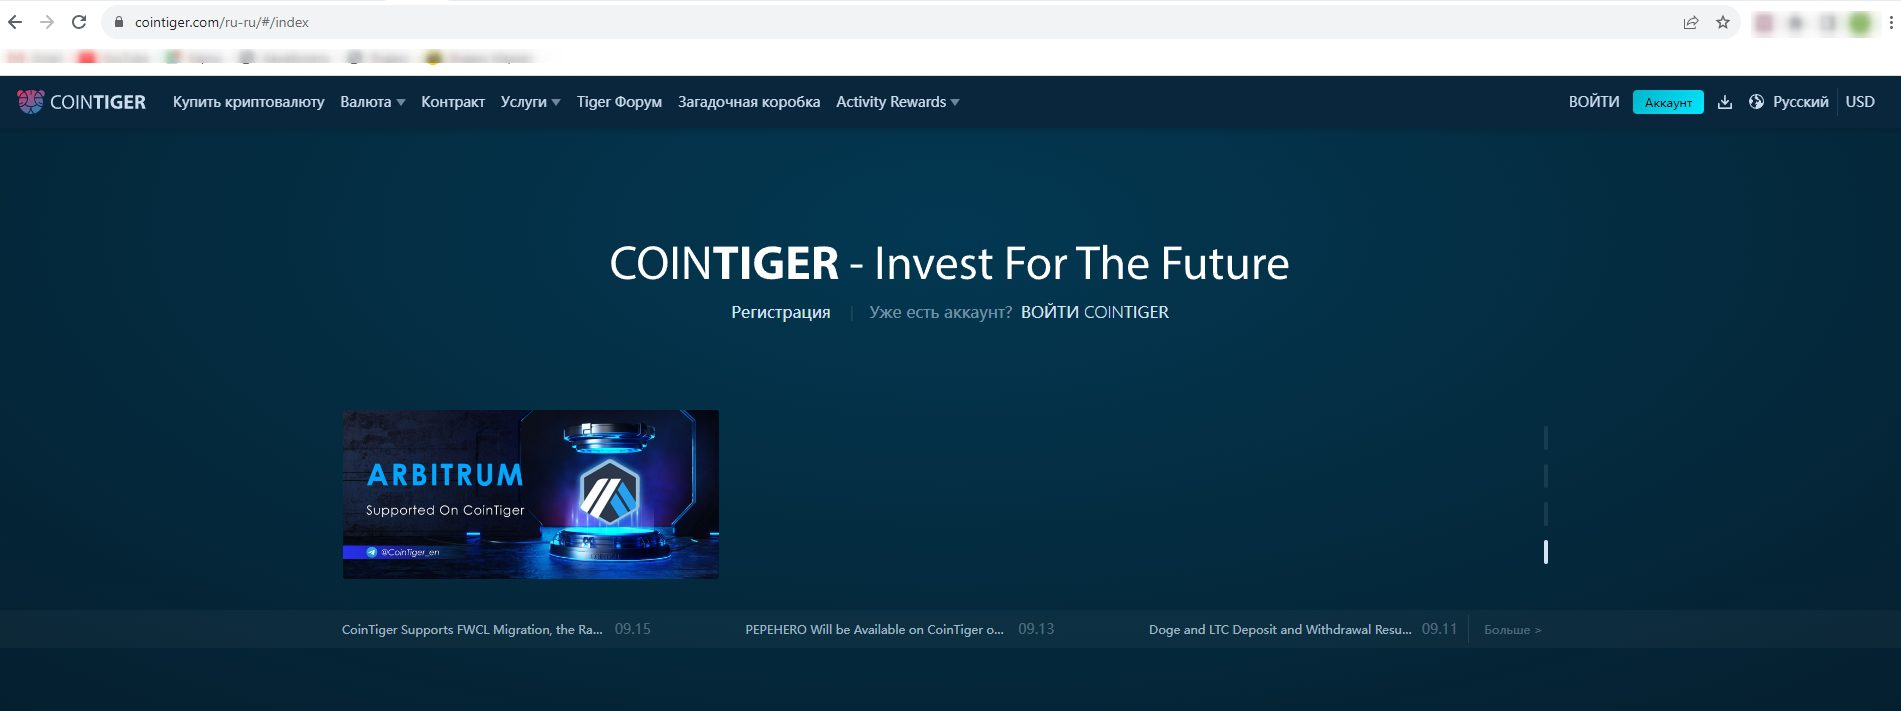 Сайт биржи CoinTiger